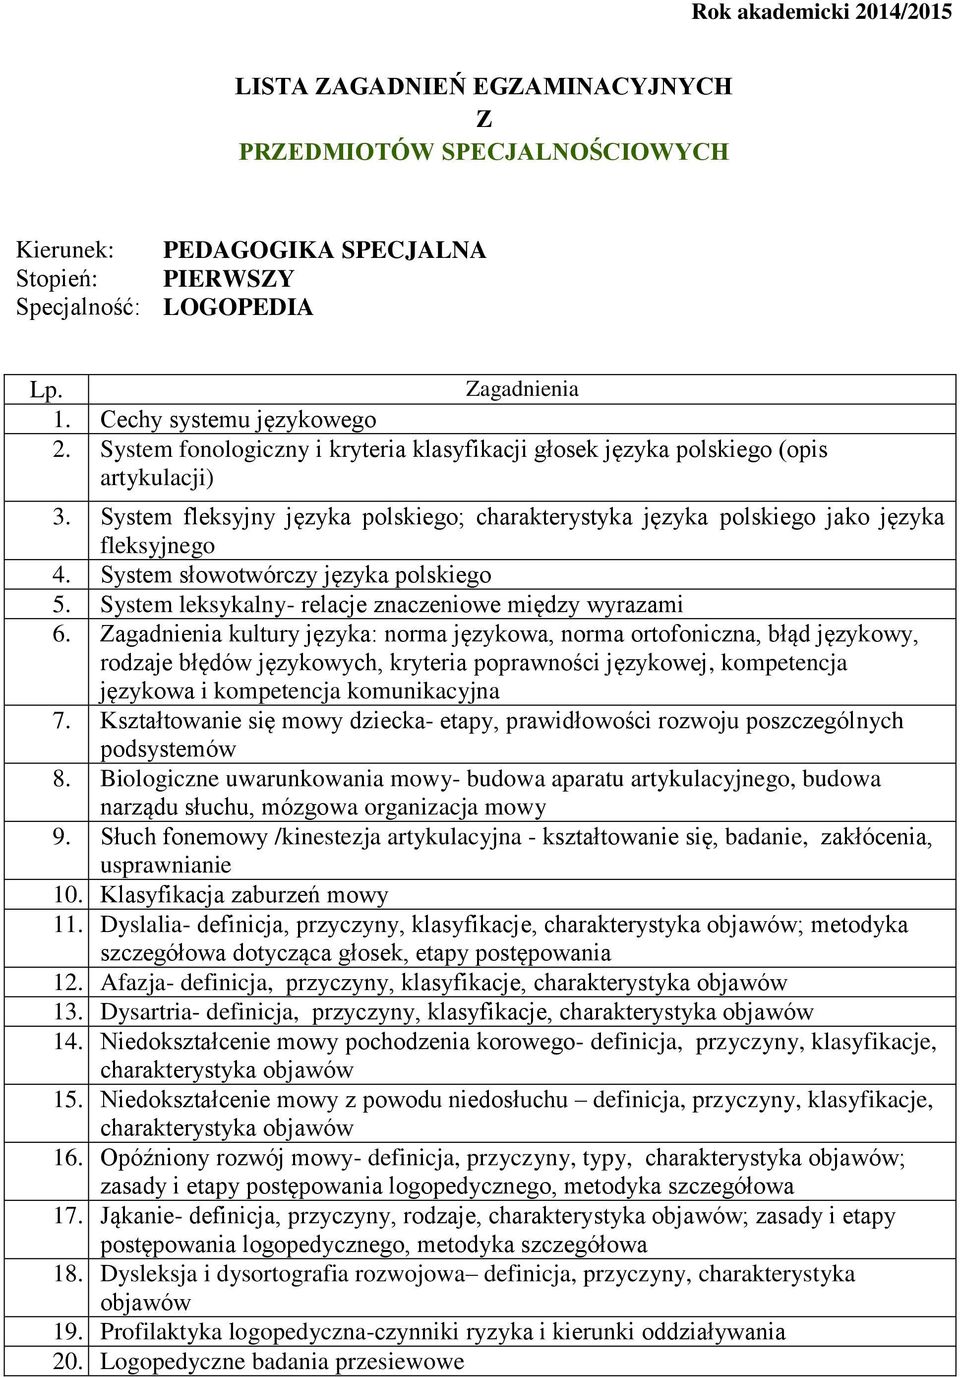 System słowotwórczy języka polskiego 5. System leksykalny- relacje znaczeniowe między wyrazami 6.